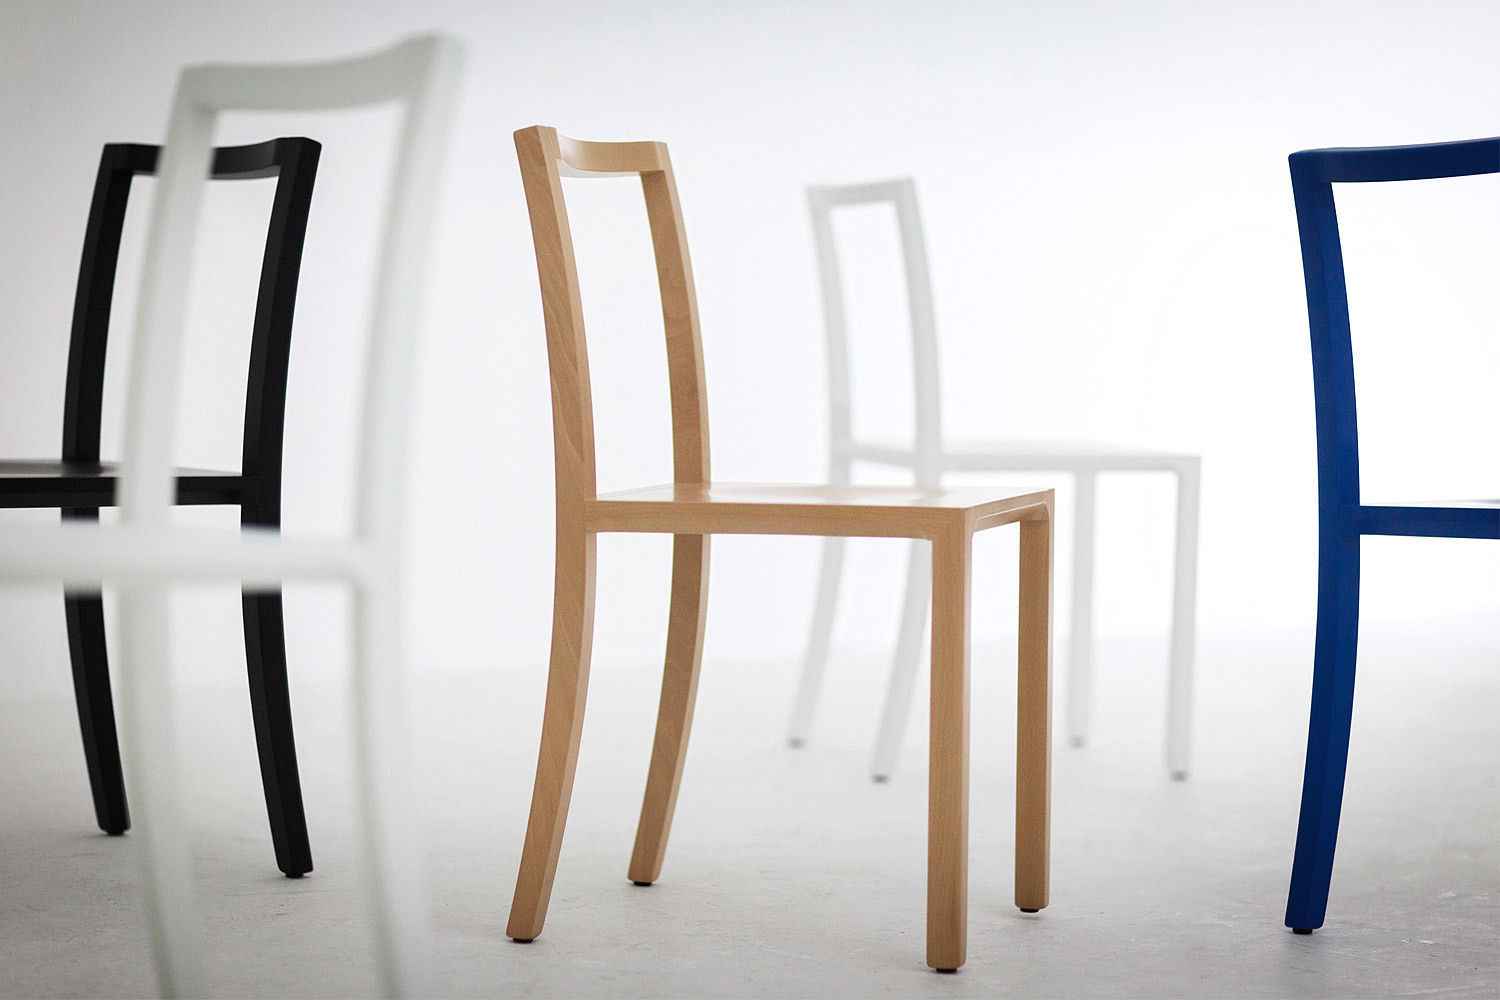 FRAMEWORK CHAIR, l'abbate l'abbate Ruang makan: Ide desain, inspirasi & gambar Chairs & benches